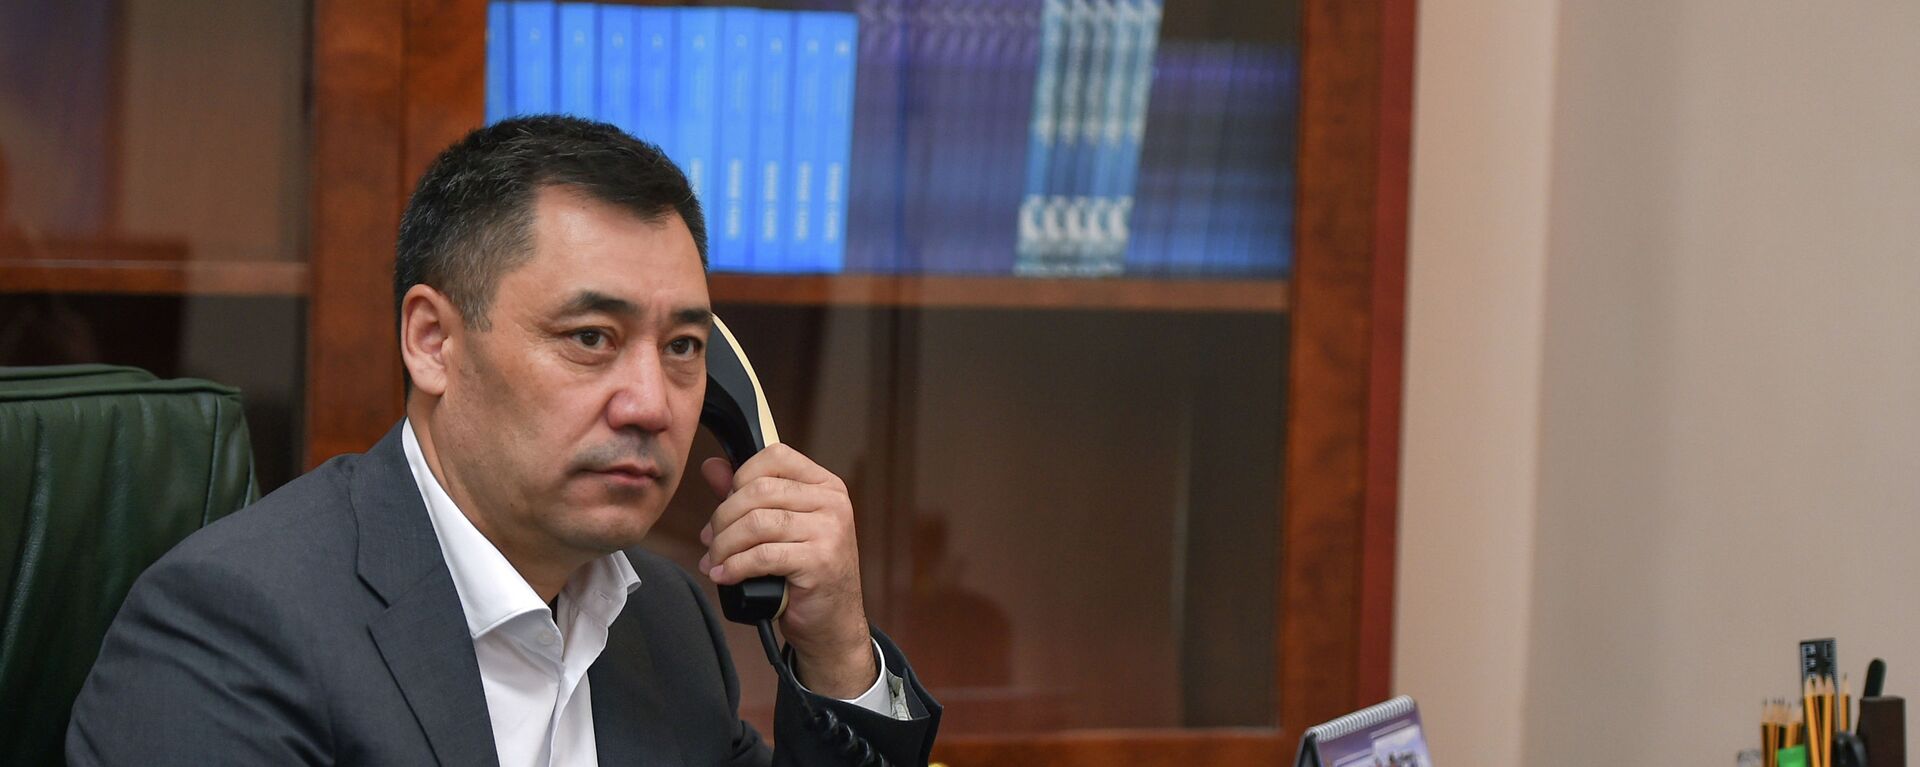 Президент Кыргызстана Садыр Жапаров во время телефонного разговора.  Архивное фото - Sputnik Кыргызстан, 1920, 30.04.2021